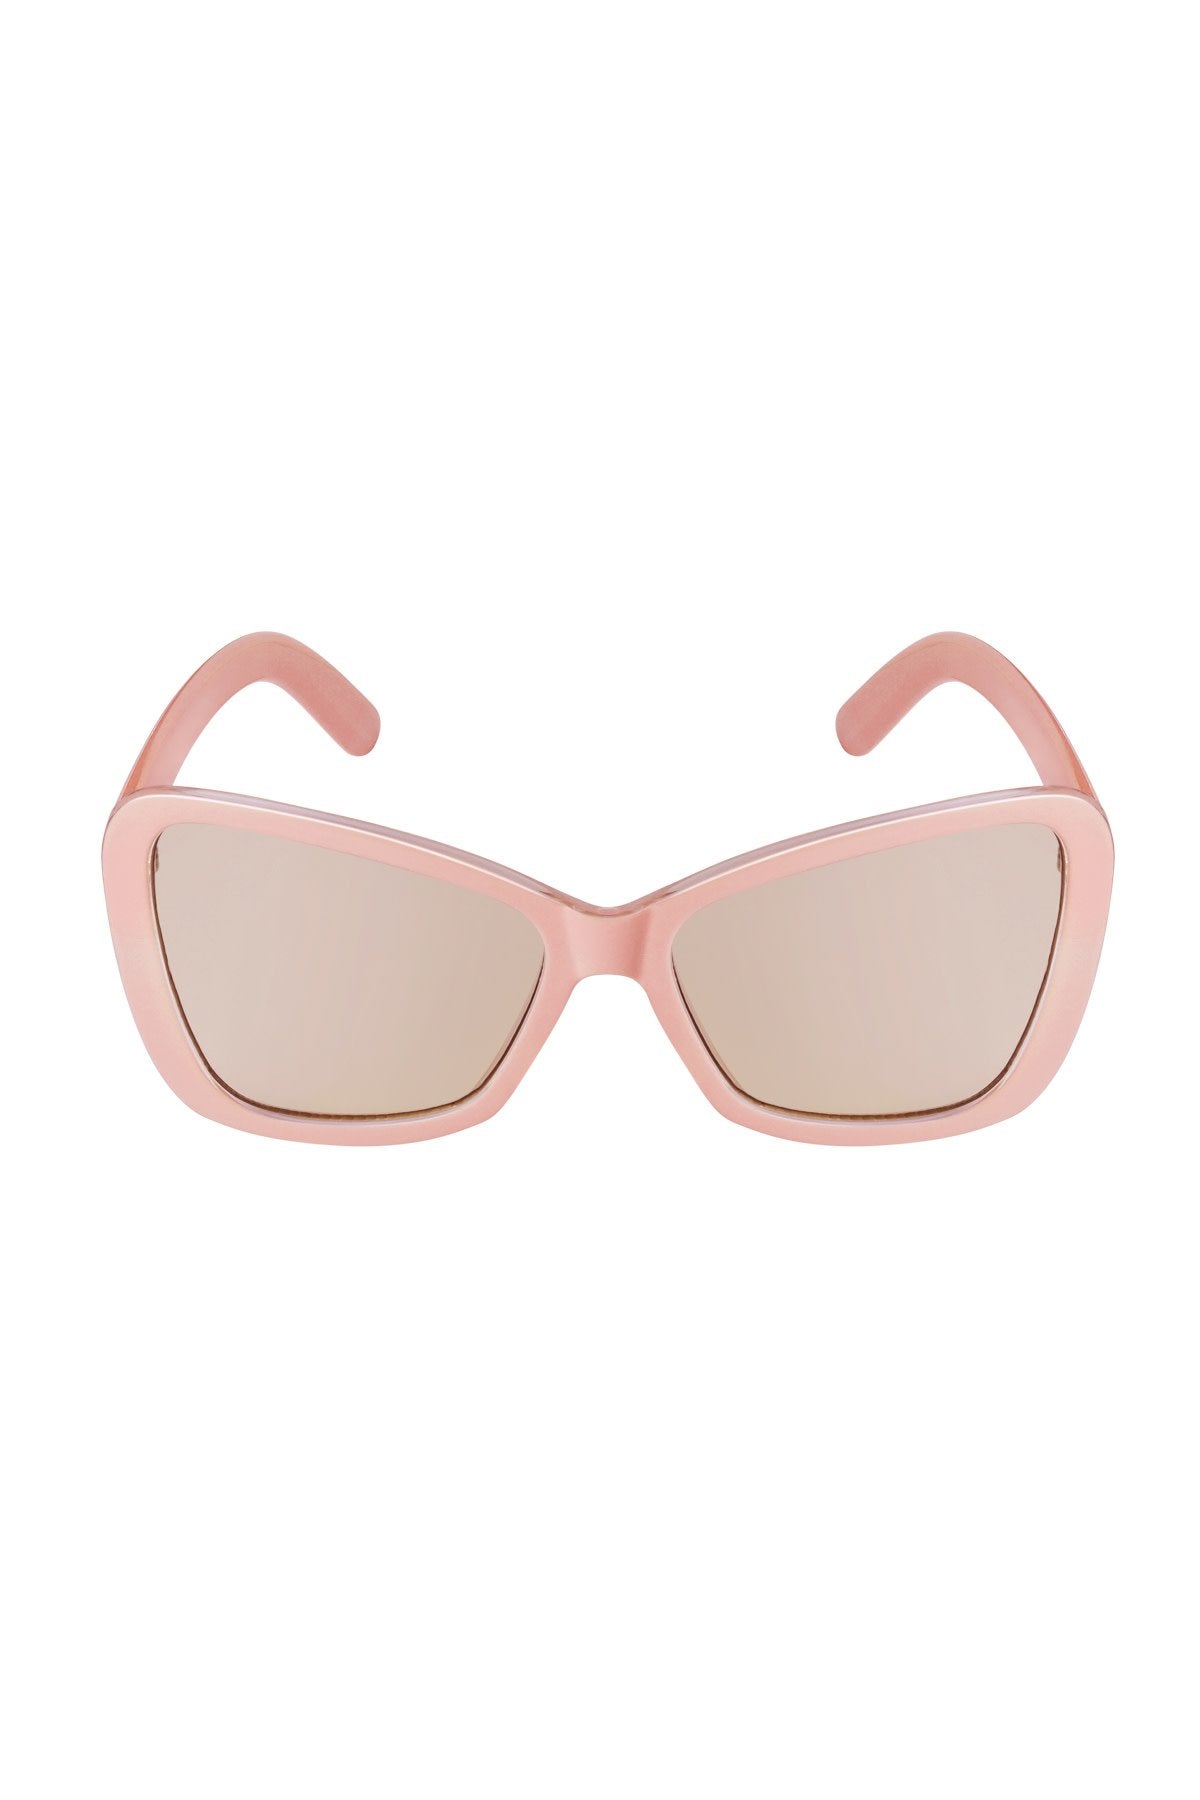 Sunglasses cat eye big pink